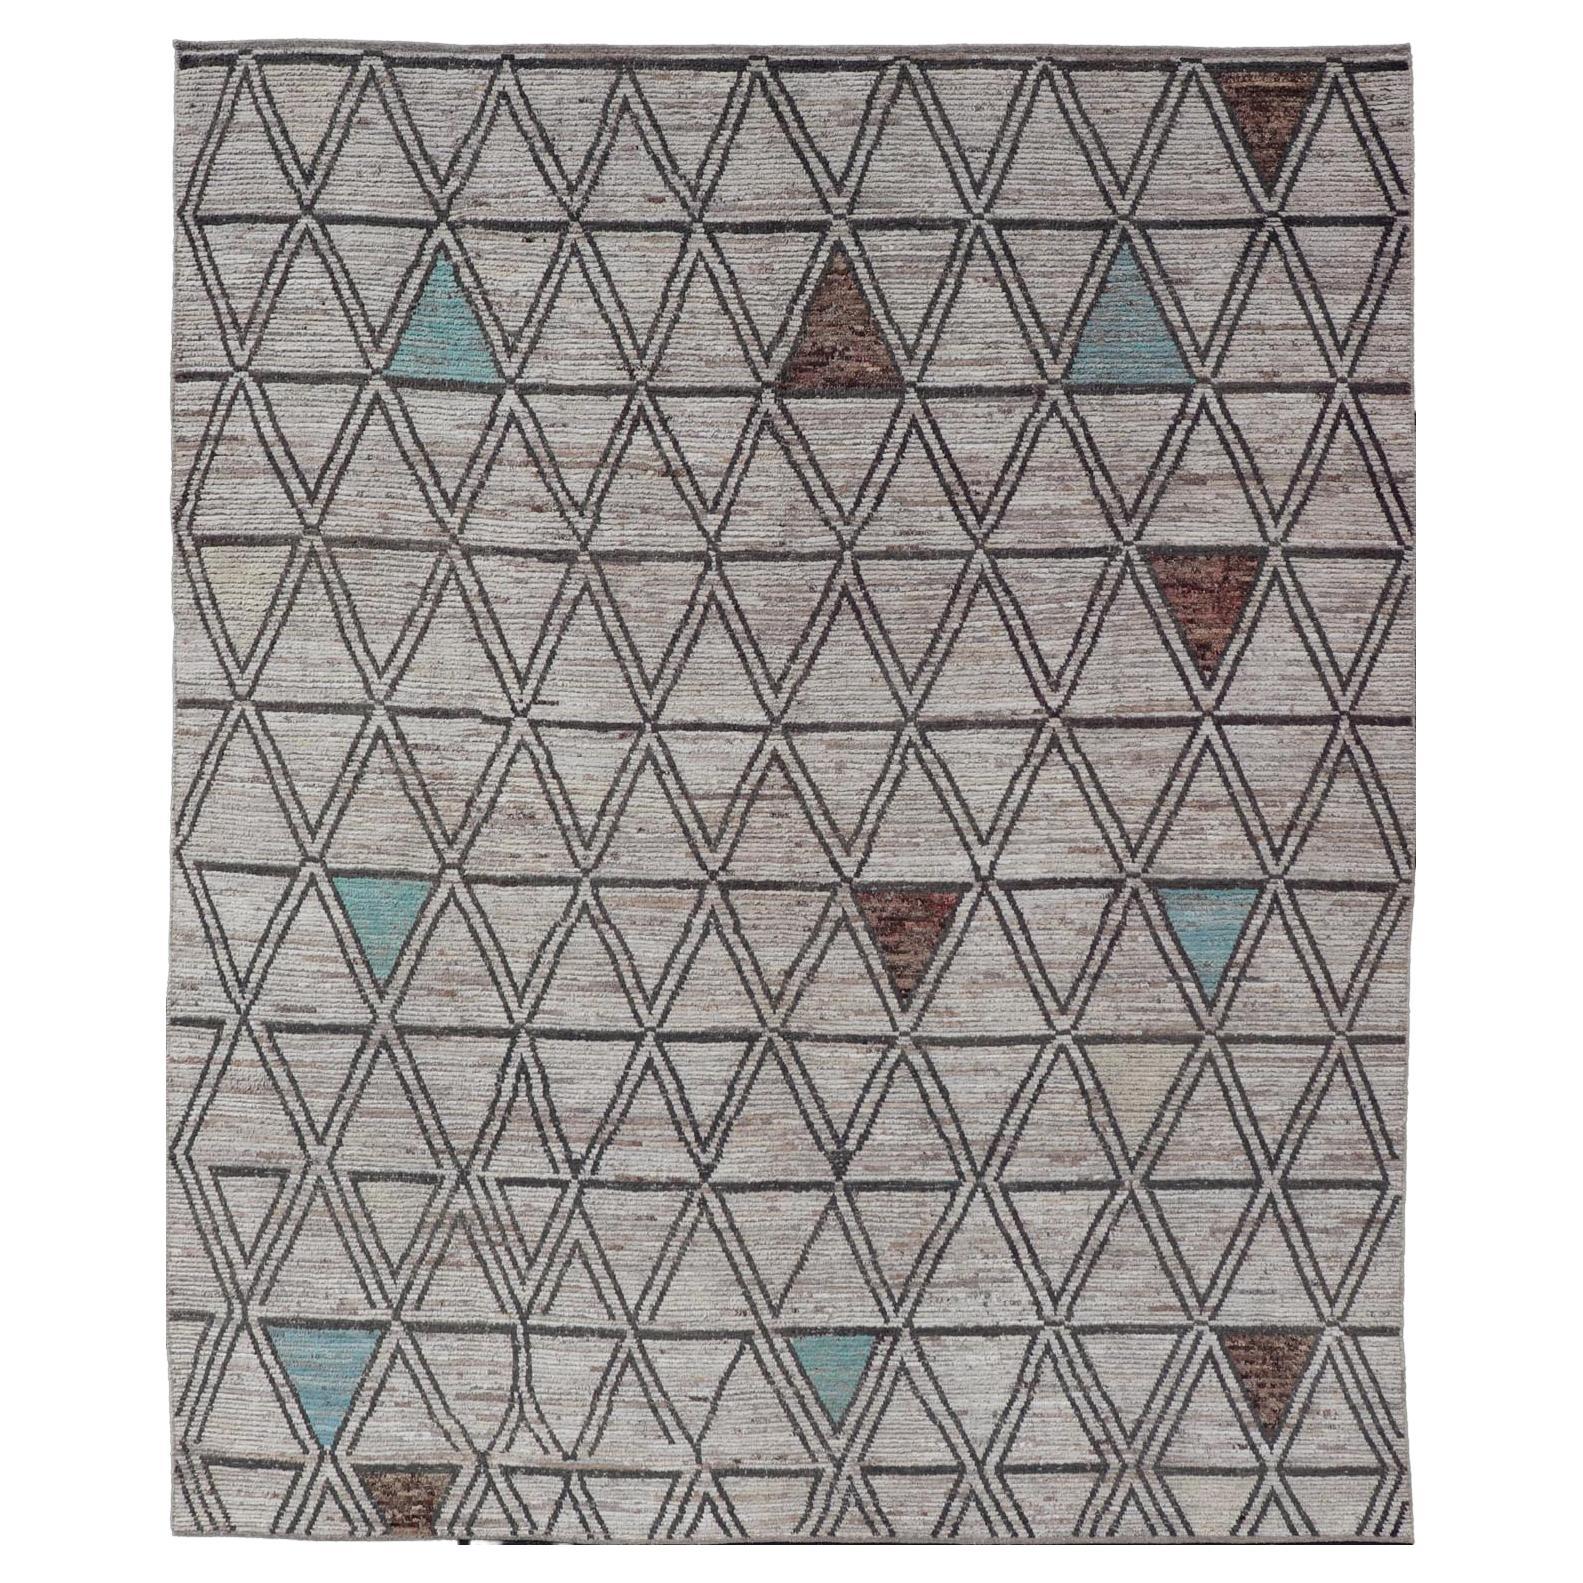 Großer moderner Teppich im marokkanischen Stil im Distressed-Stil mit Diamanten und dreieckigem Design